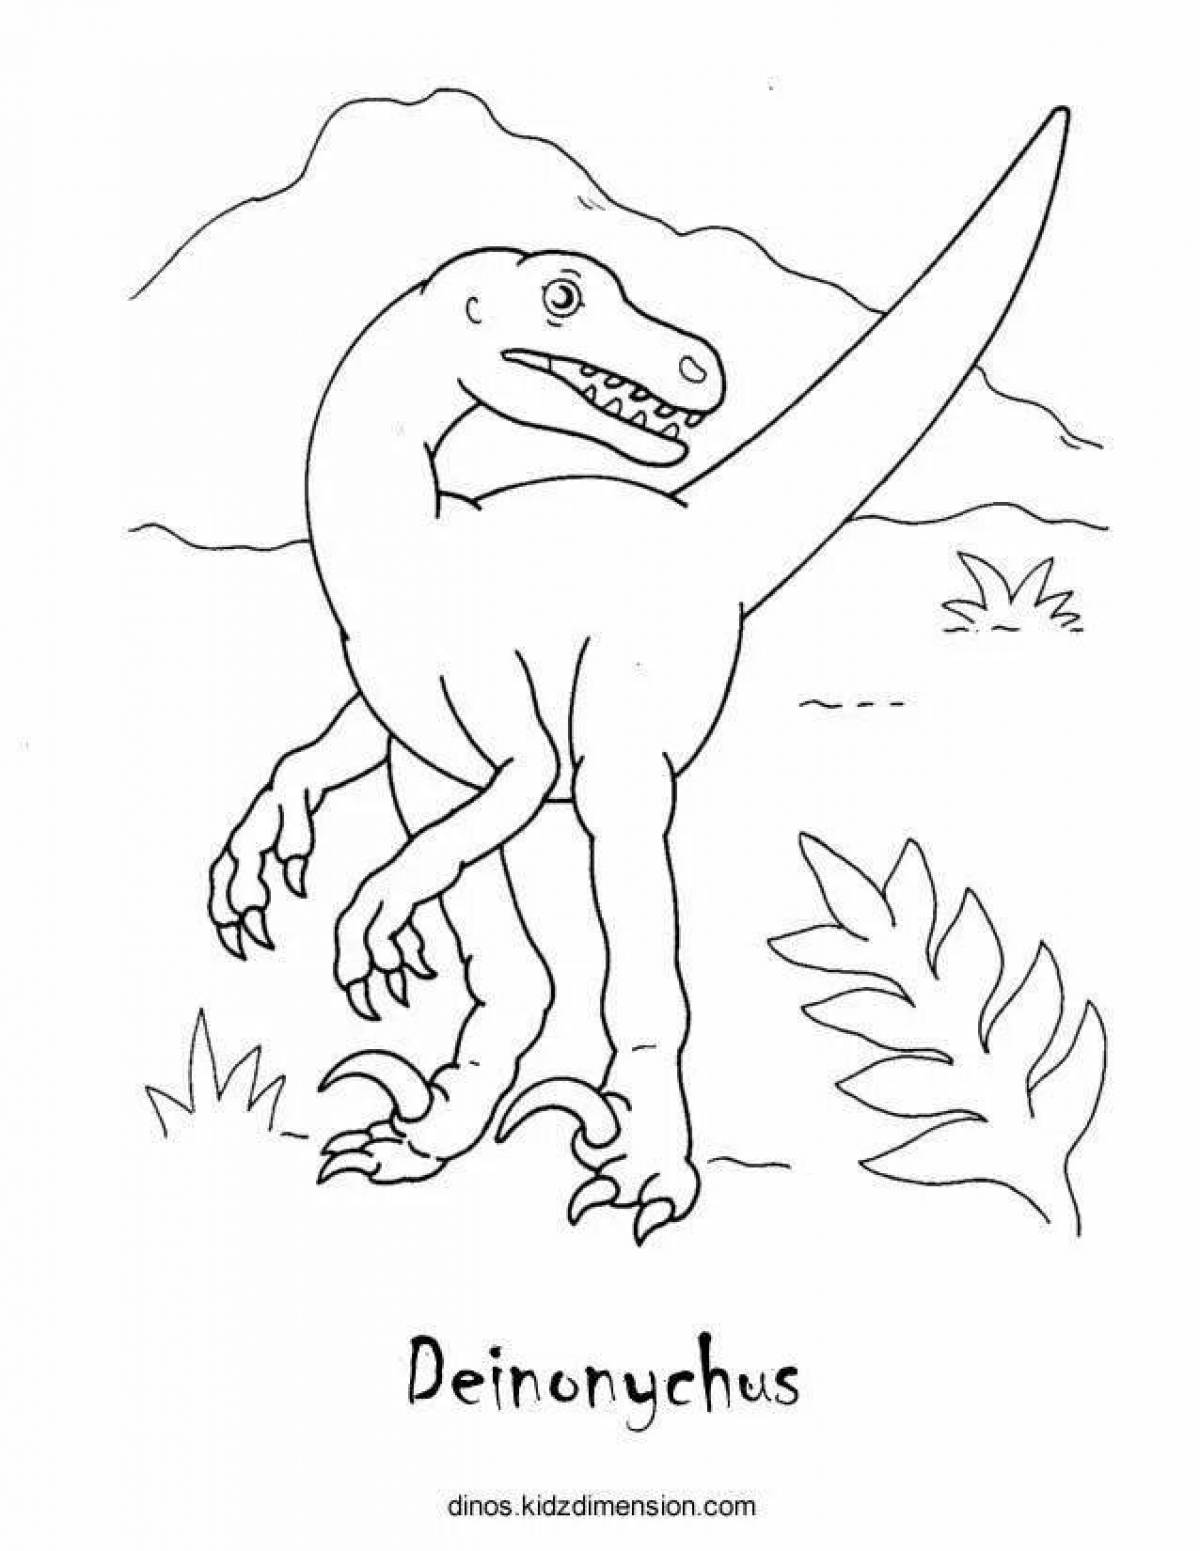 Deinonychus incredible coloring book